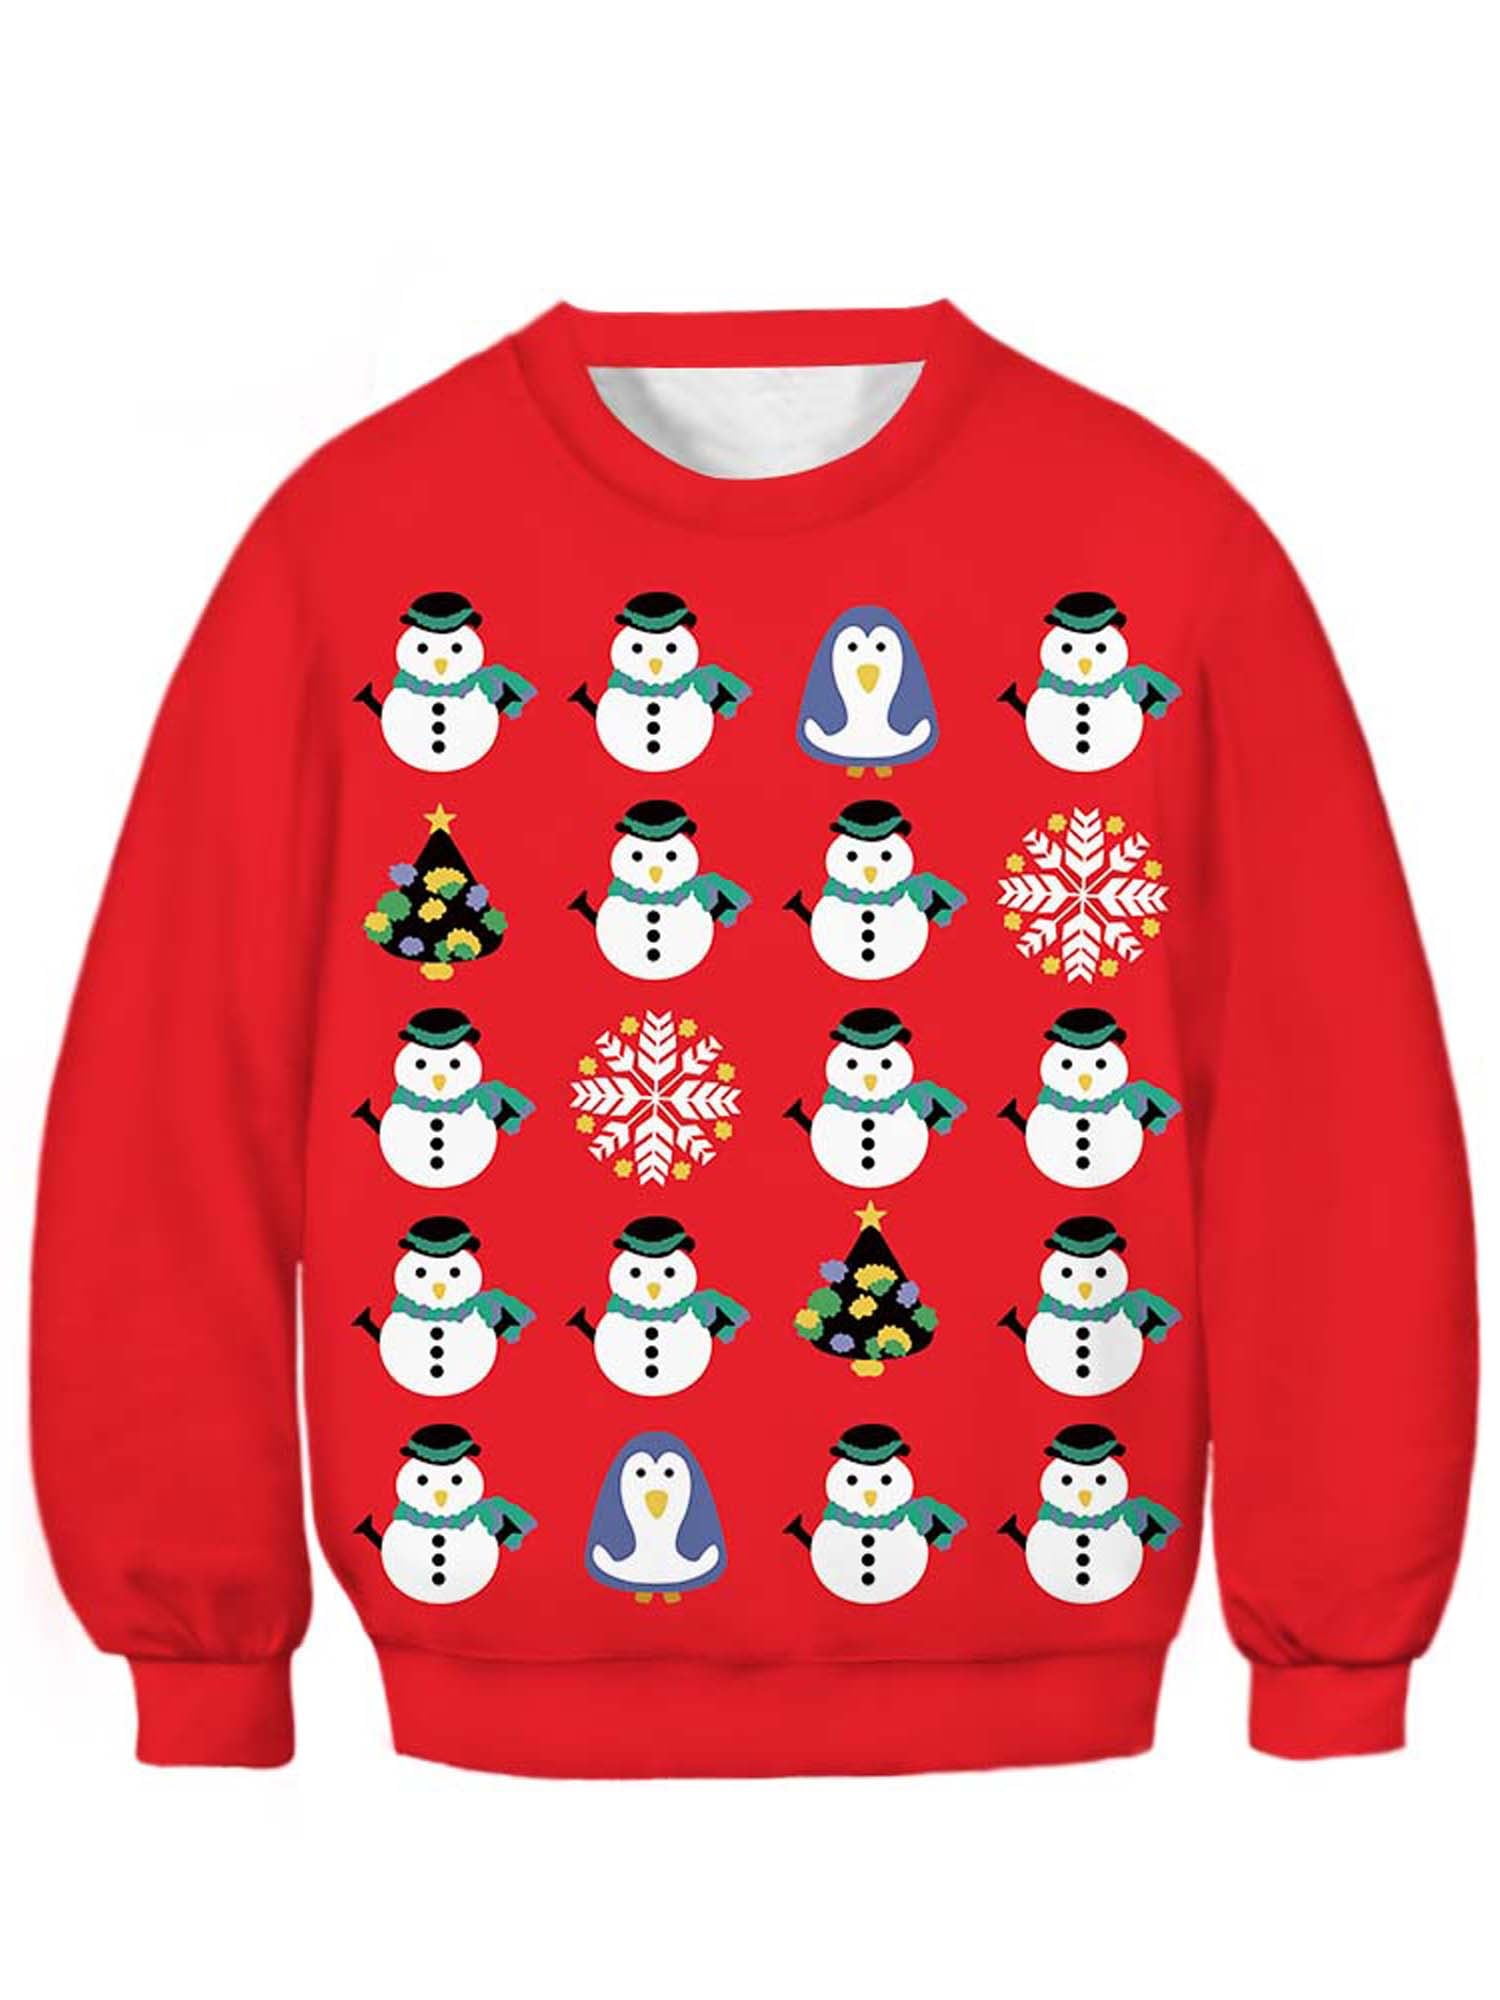 Kids Boys Girls Christmas Funny ▪ Sweatshirt Hoodie Sweater Jumper Pullover 